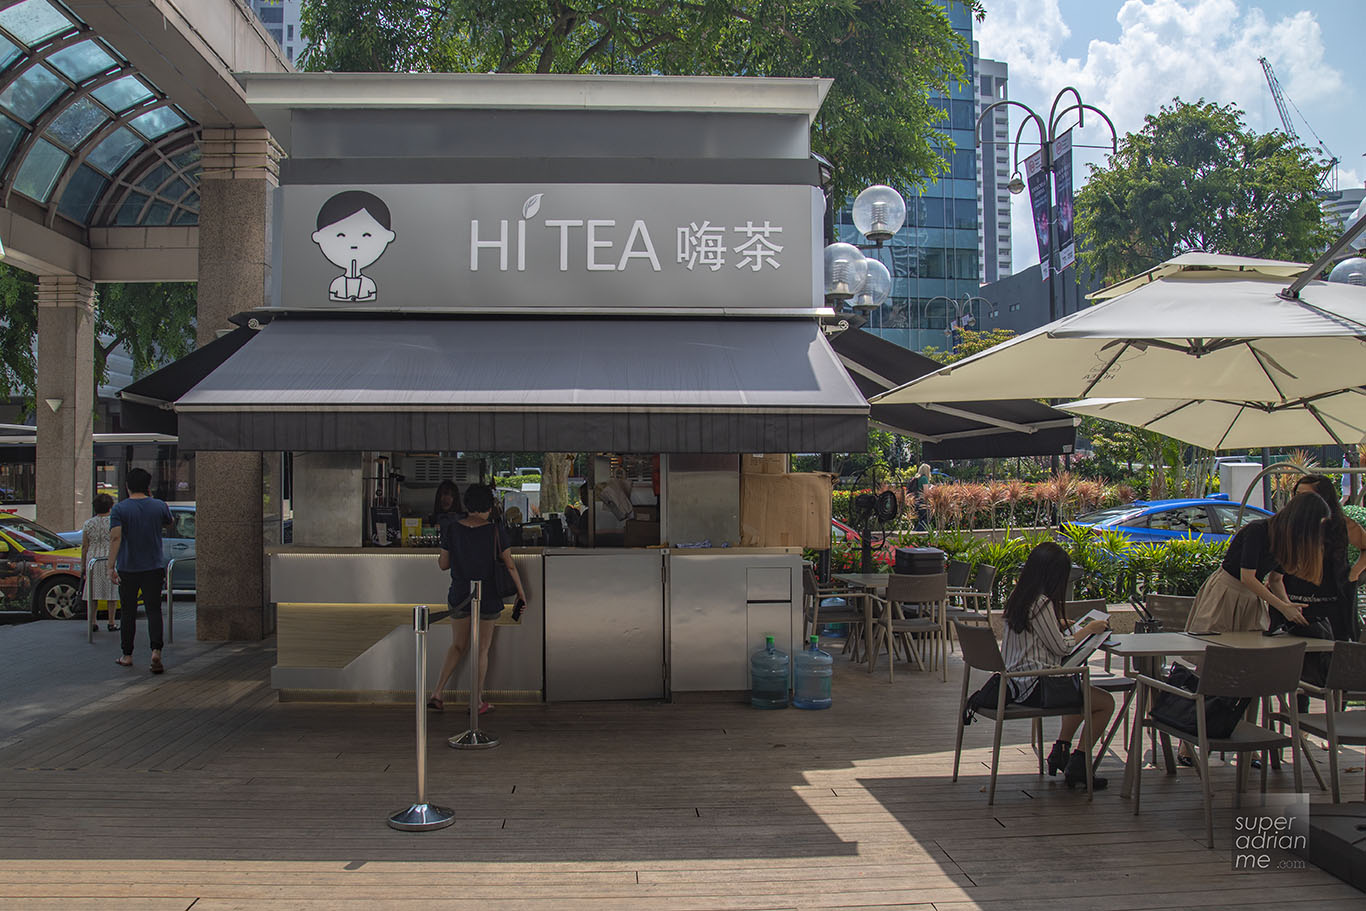 Hi Tea outlet at Far East Plaza